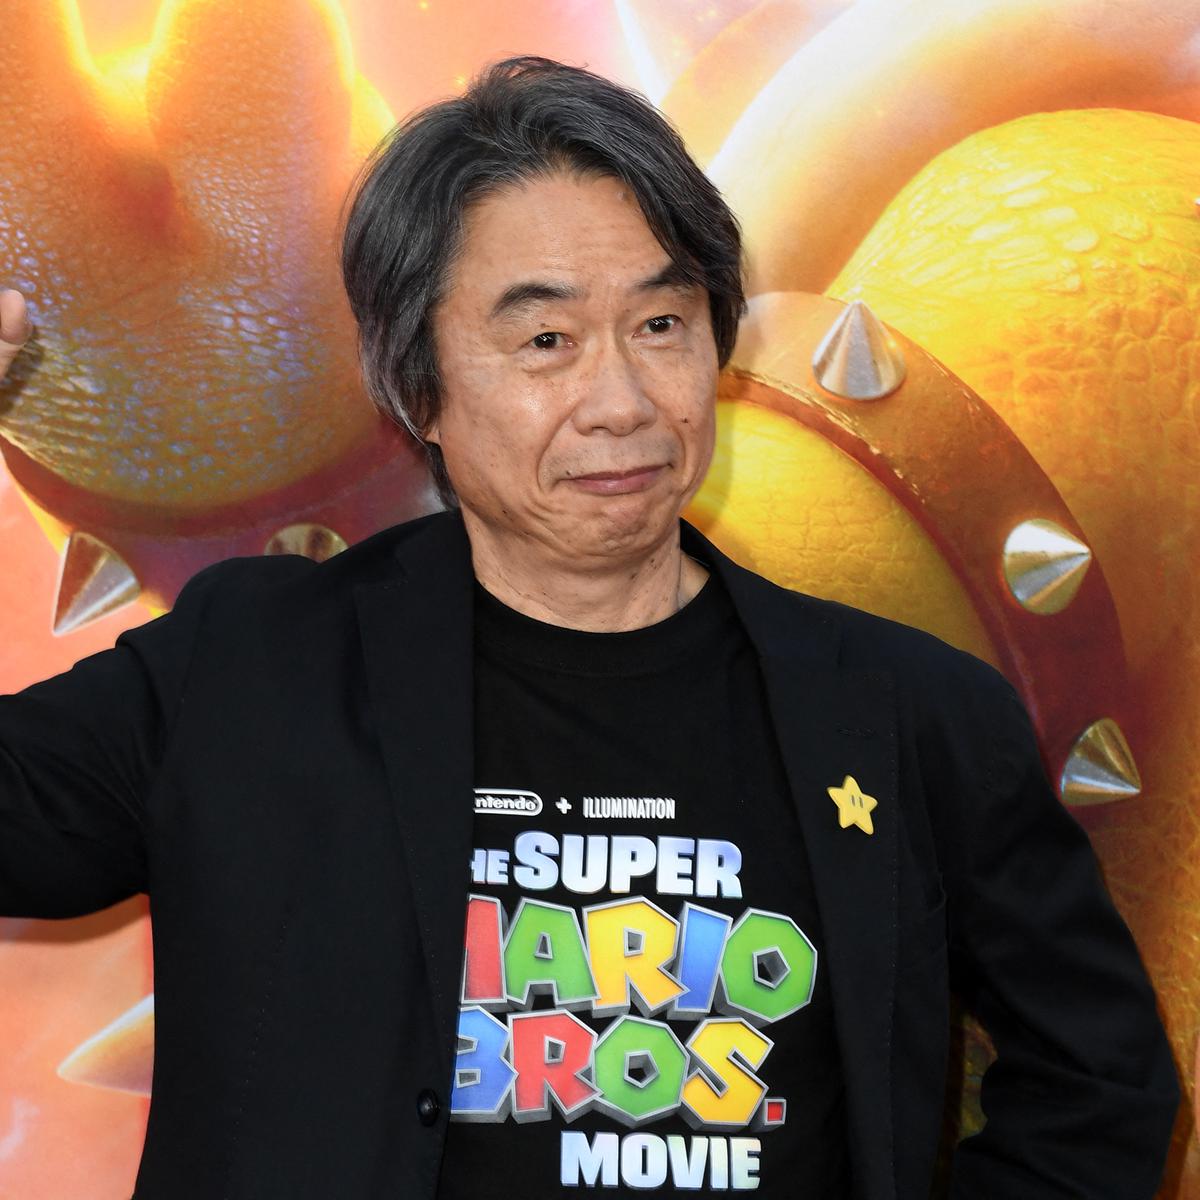 La biografía de Shigeru Miyamoto - Mundo N